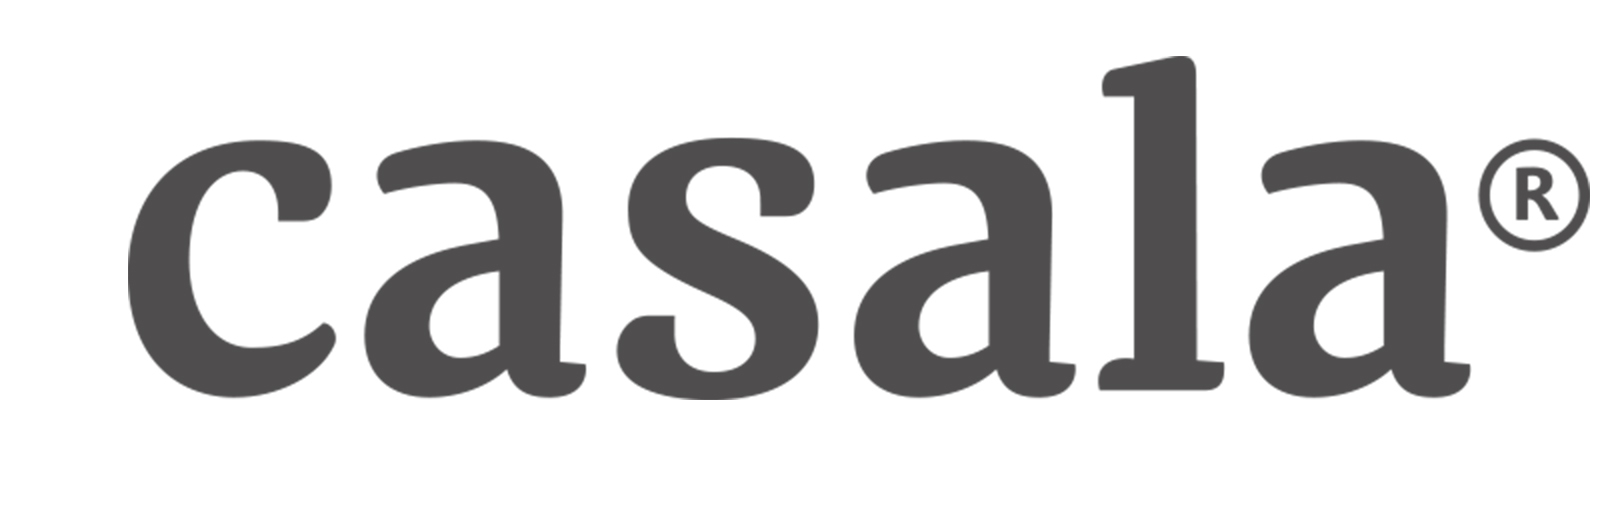 Casala | Binnenkort Online 